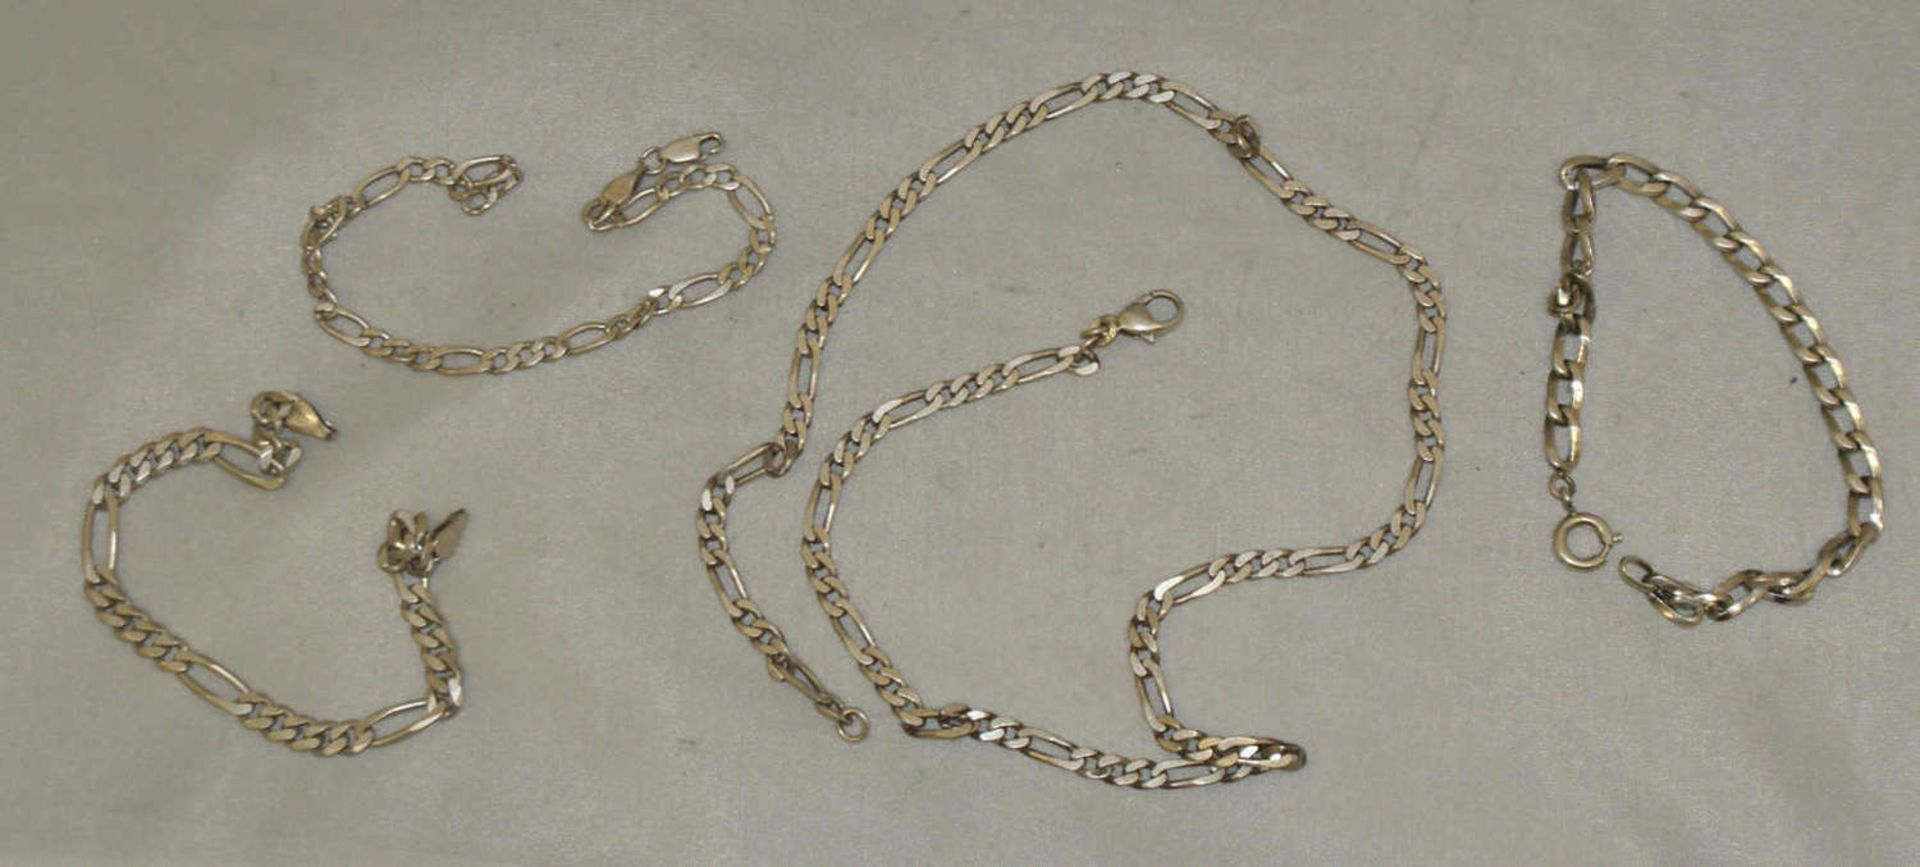 Lot Silberschmuck, dabei 3 Armbänder, sowie 1 Kette. Kettenlänge ca. 50 cm. Alle Teile Silber